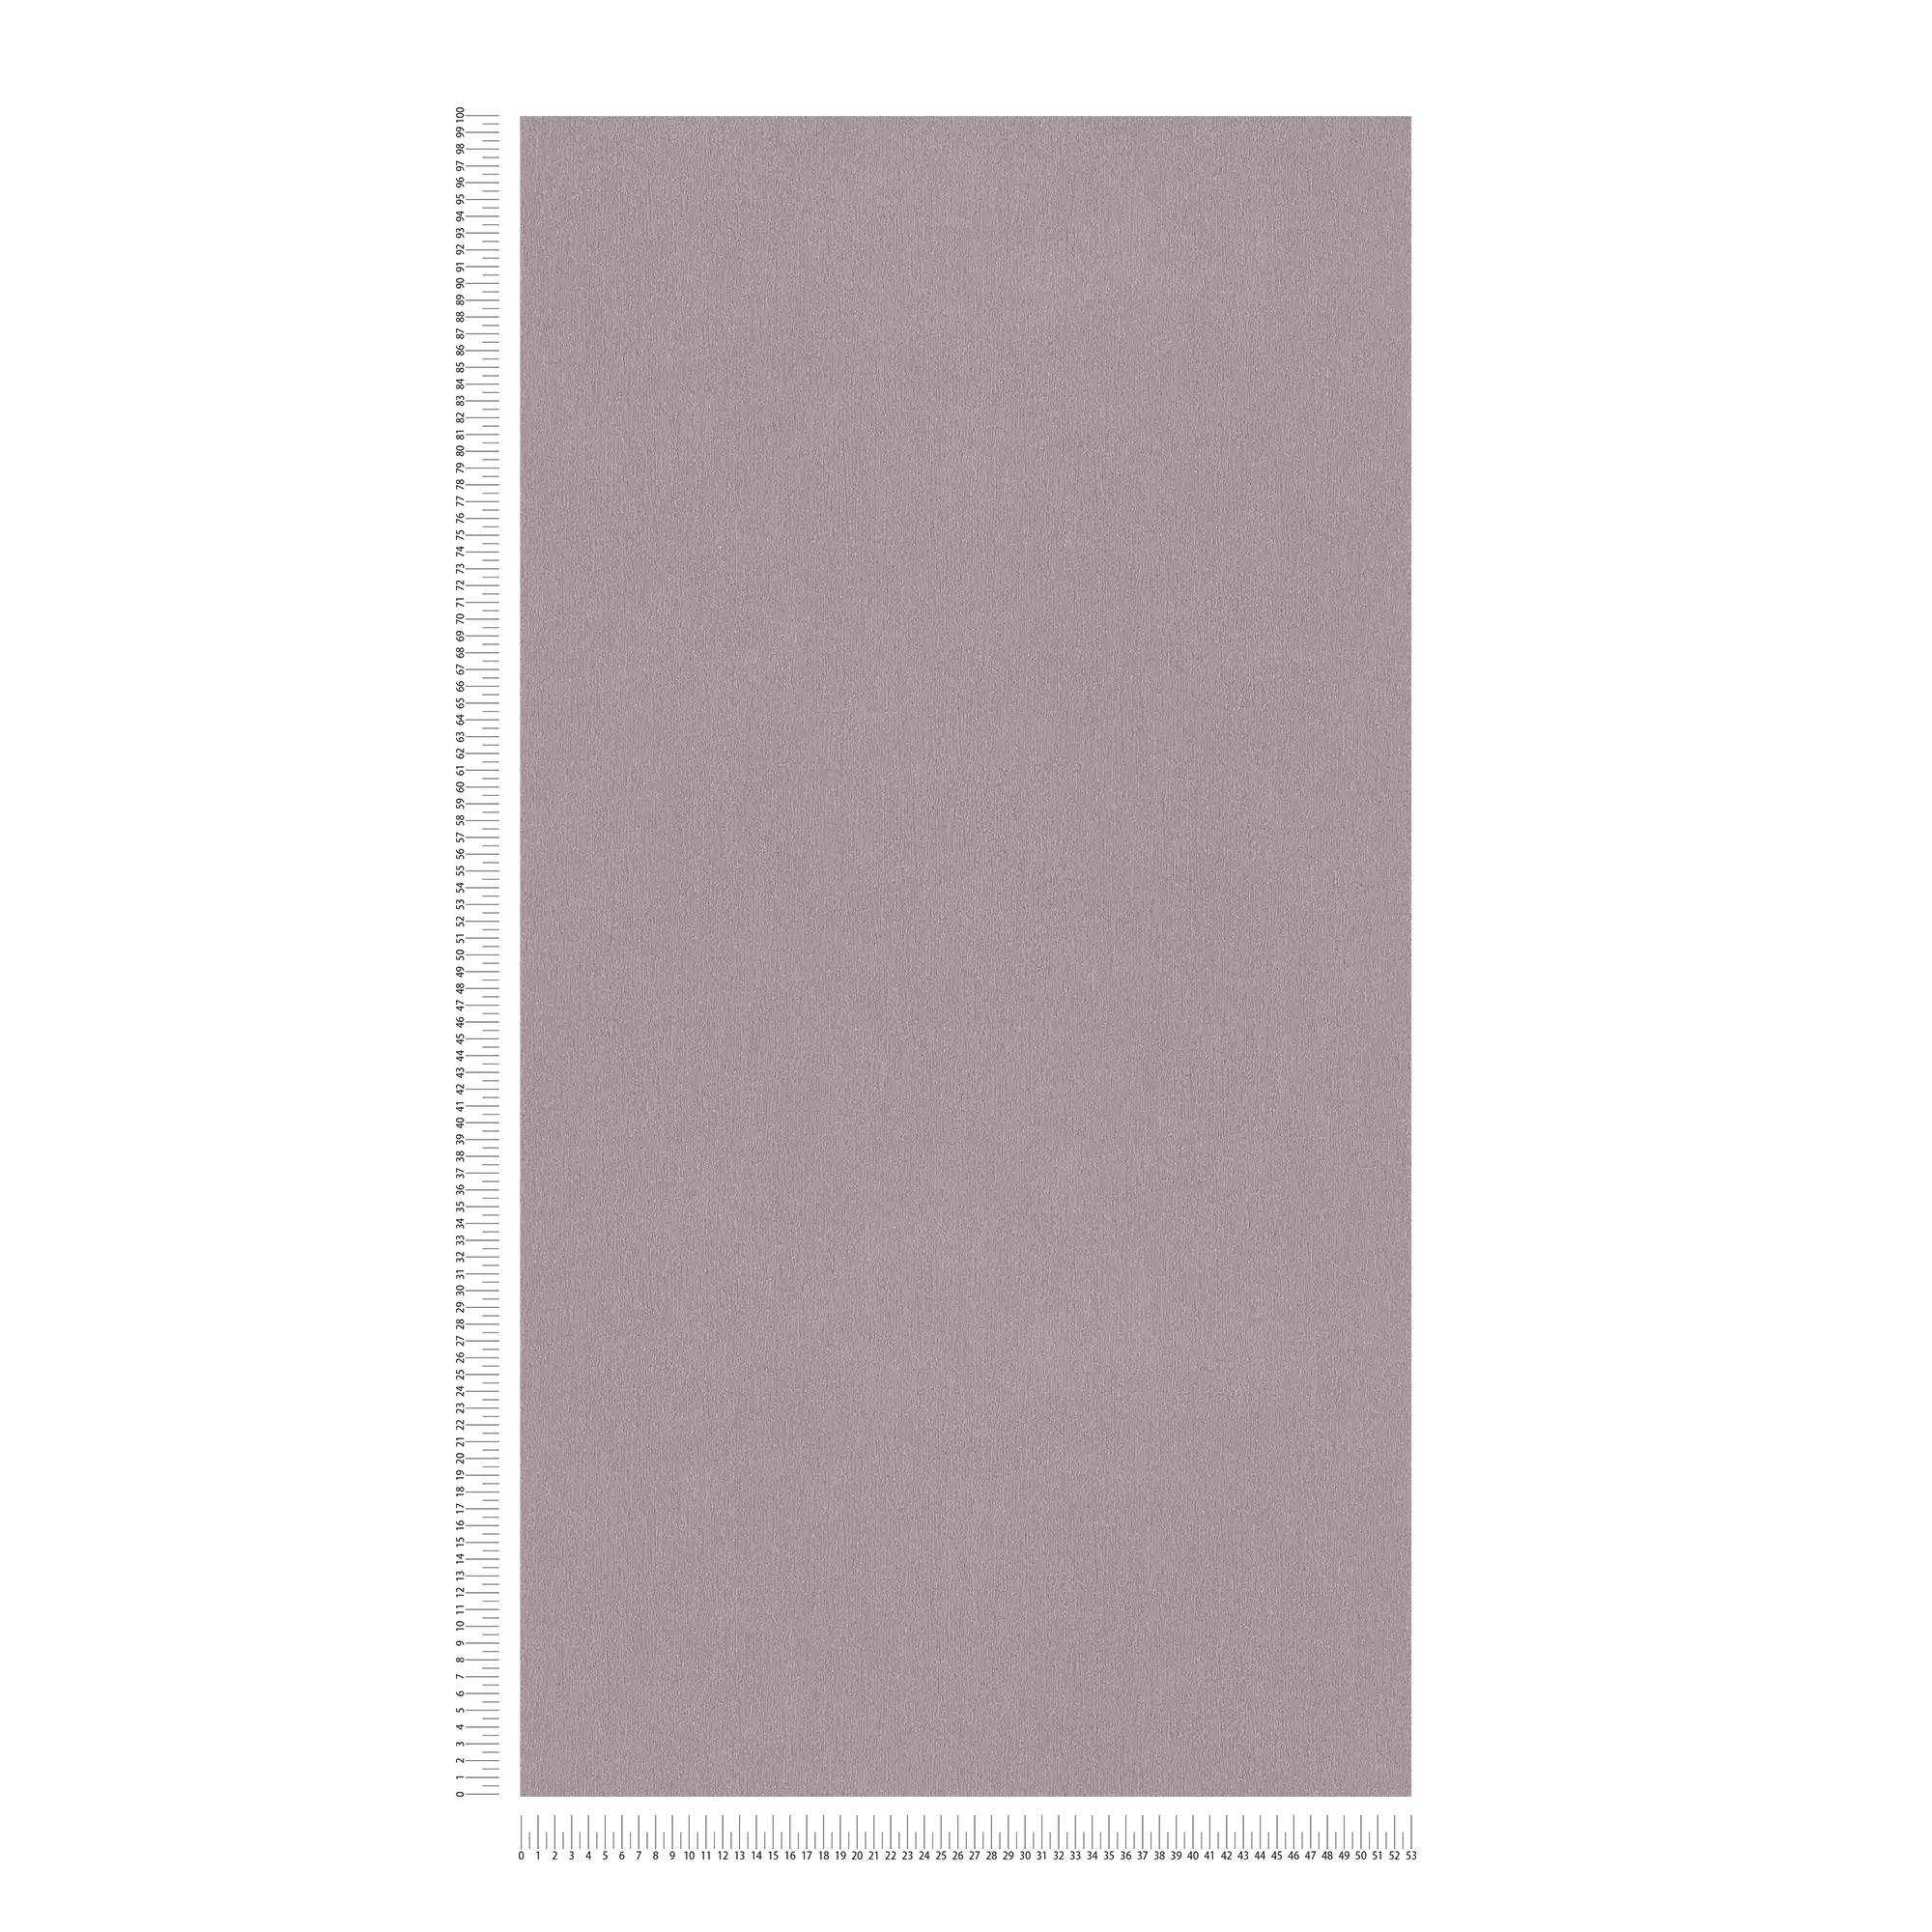             Papel pintado no tejido grisáceo oscuro con sombreado de color
        